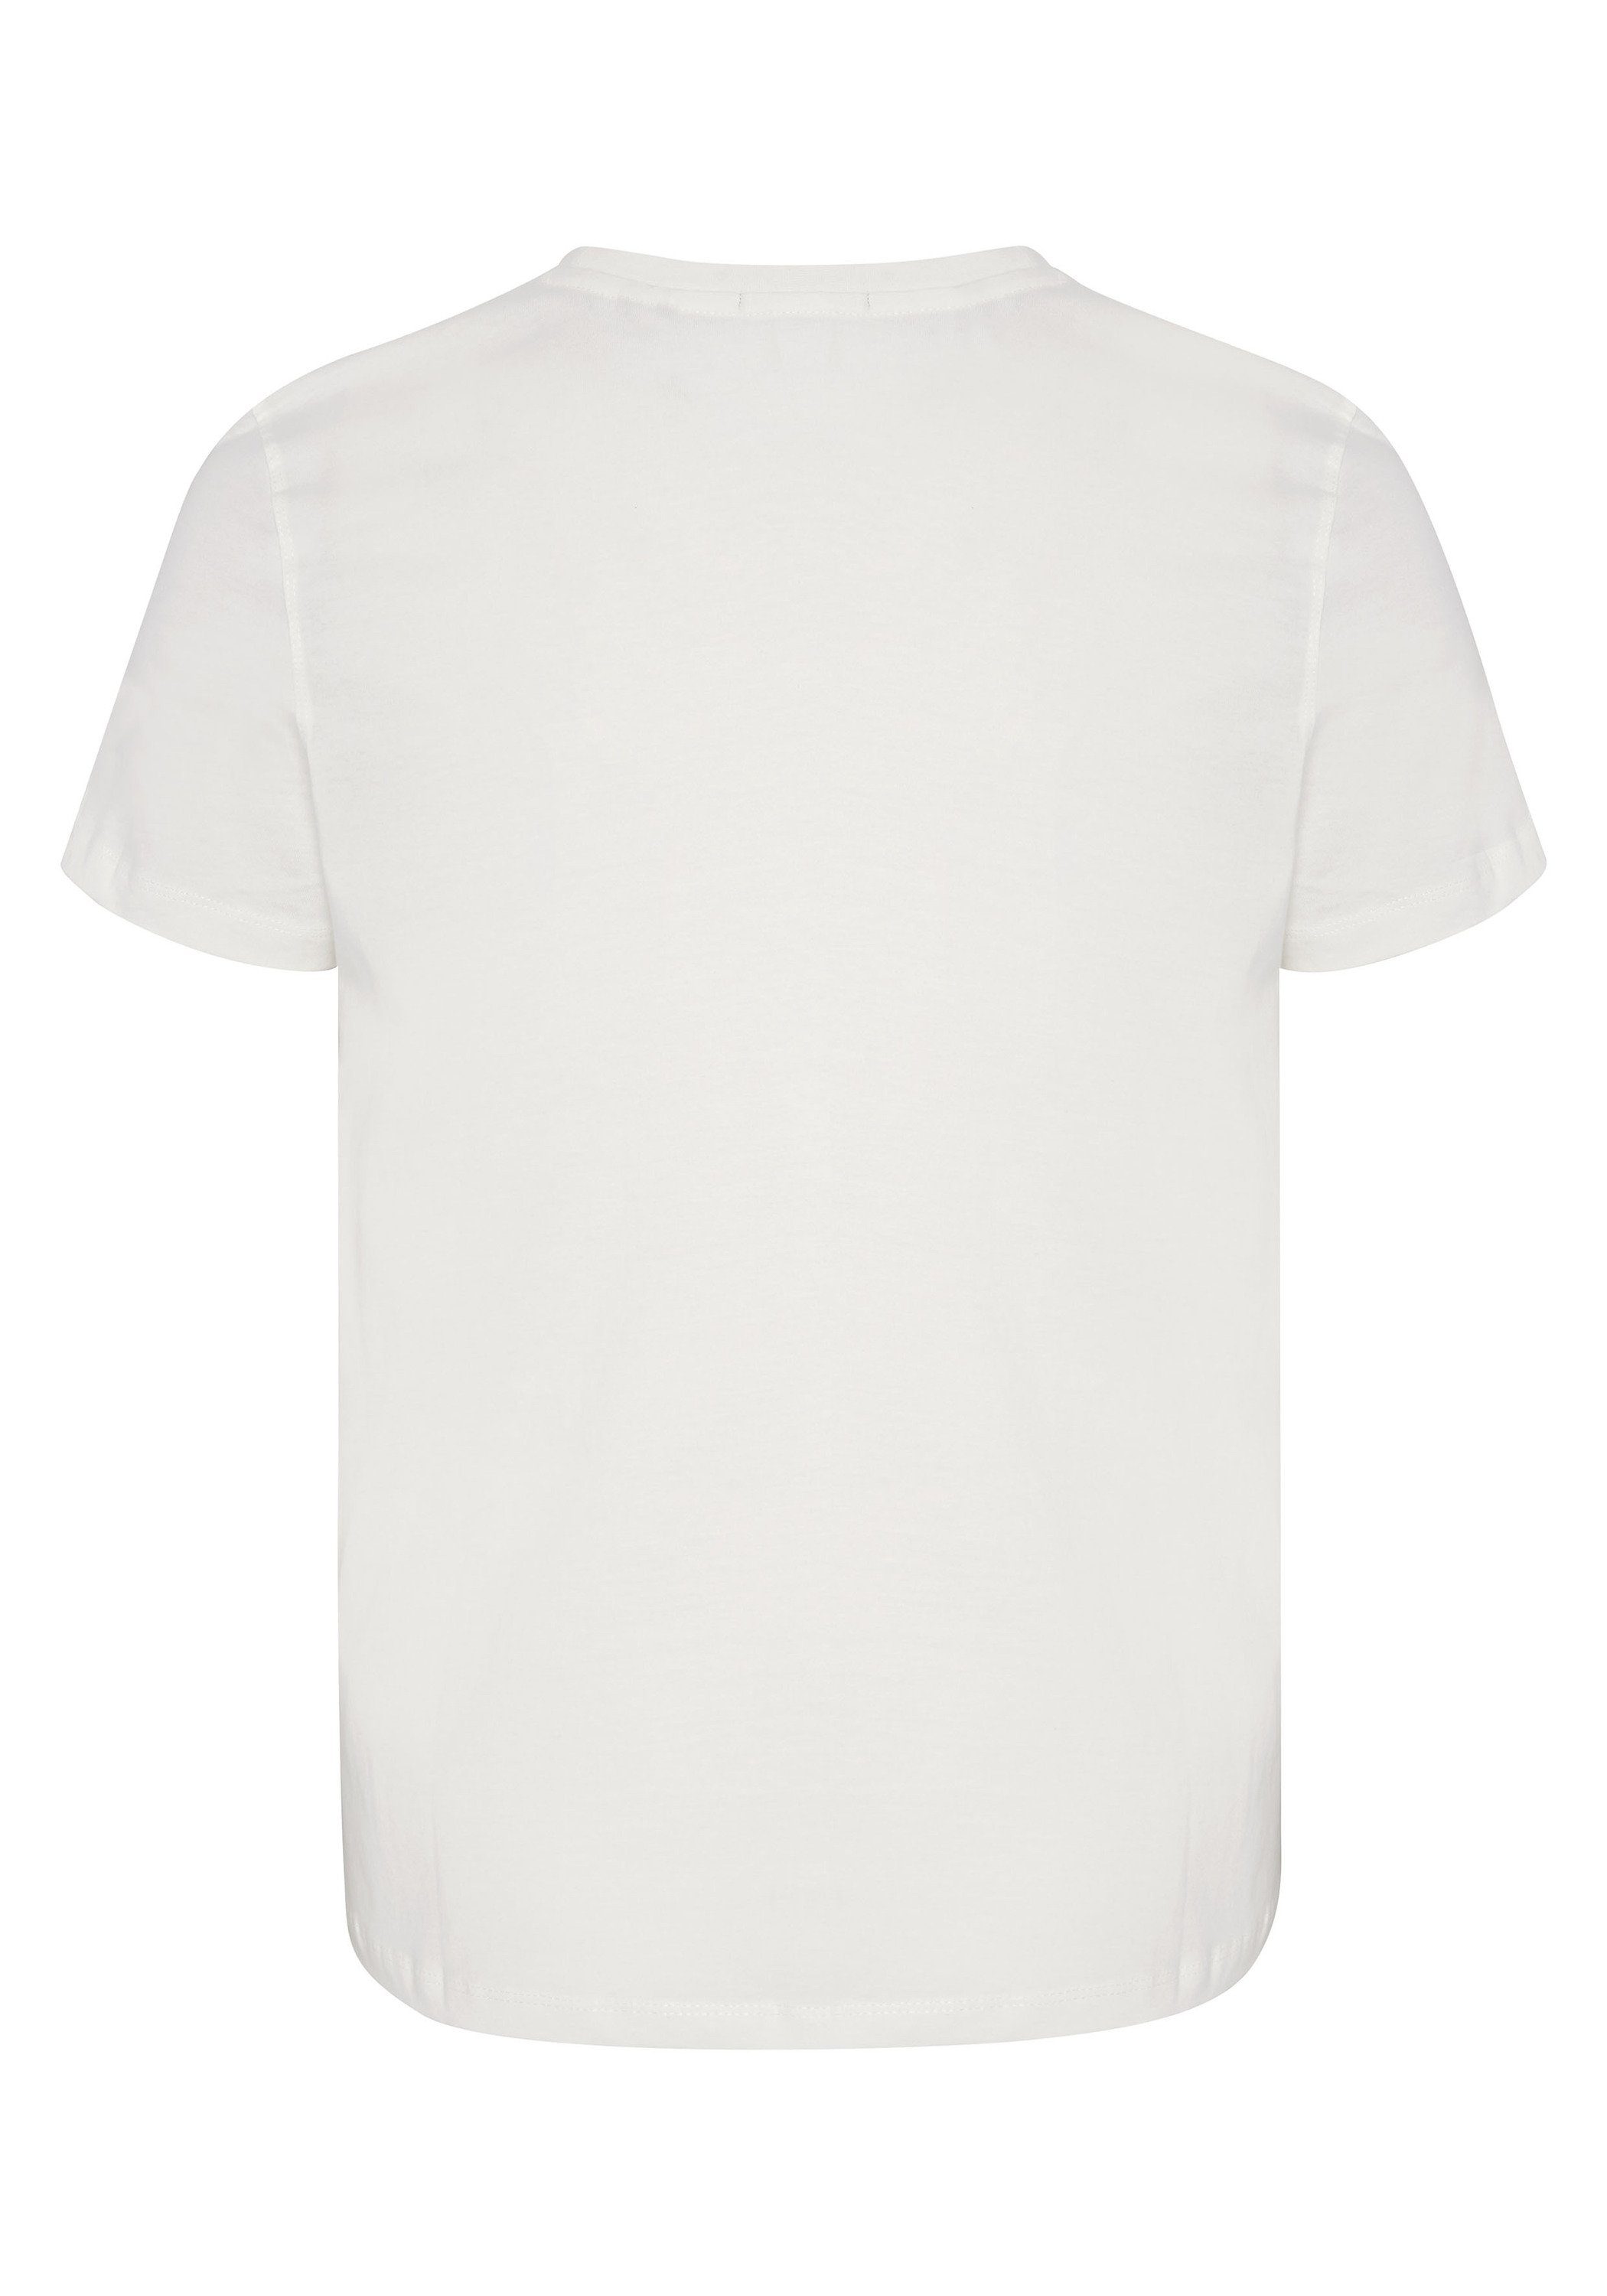 Chiemsee Print-Shirt T-Shirt mit plakativem 1 Dif Grn Markenschriftzug Wht/Md